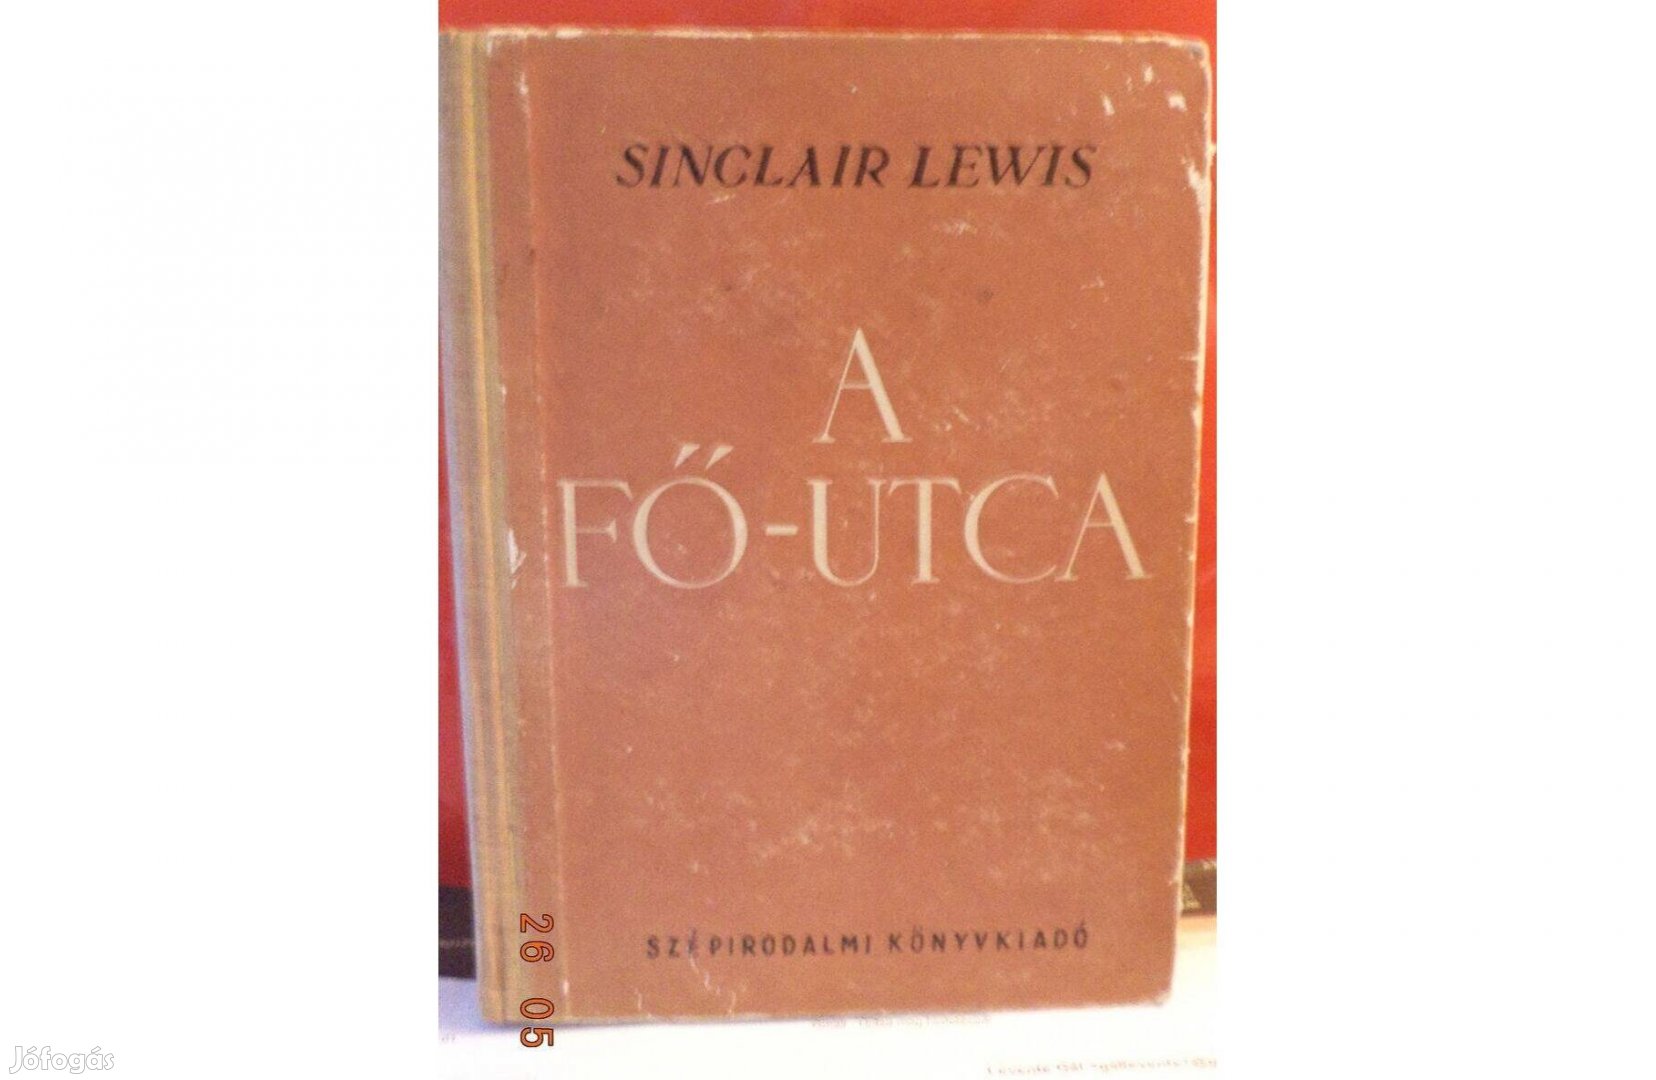 Sinclair Lewis: A Fő - utca